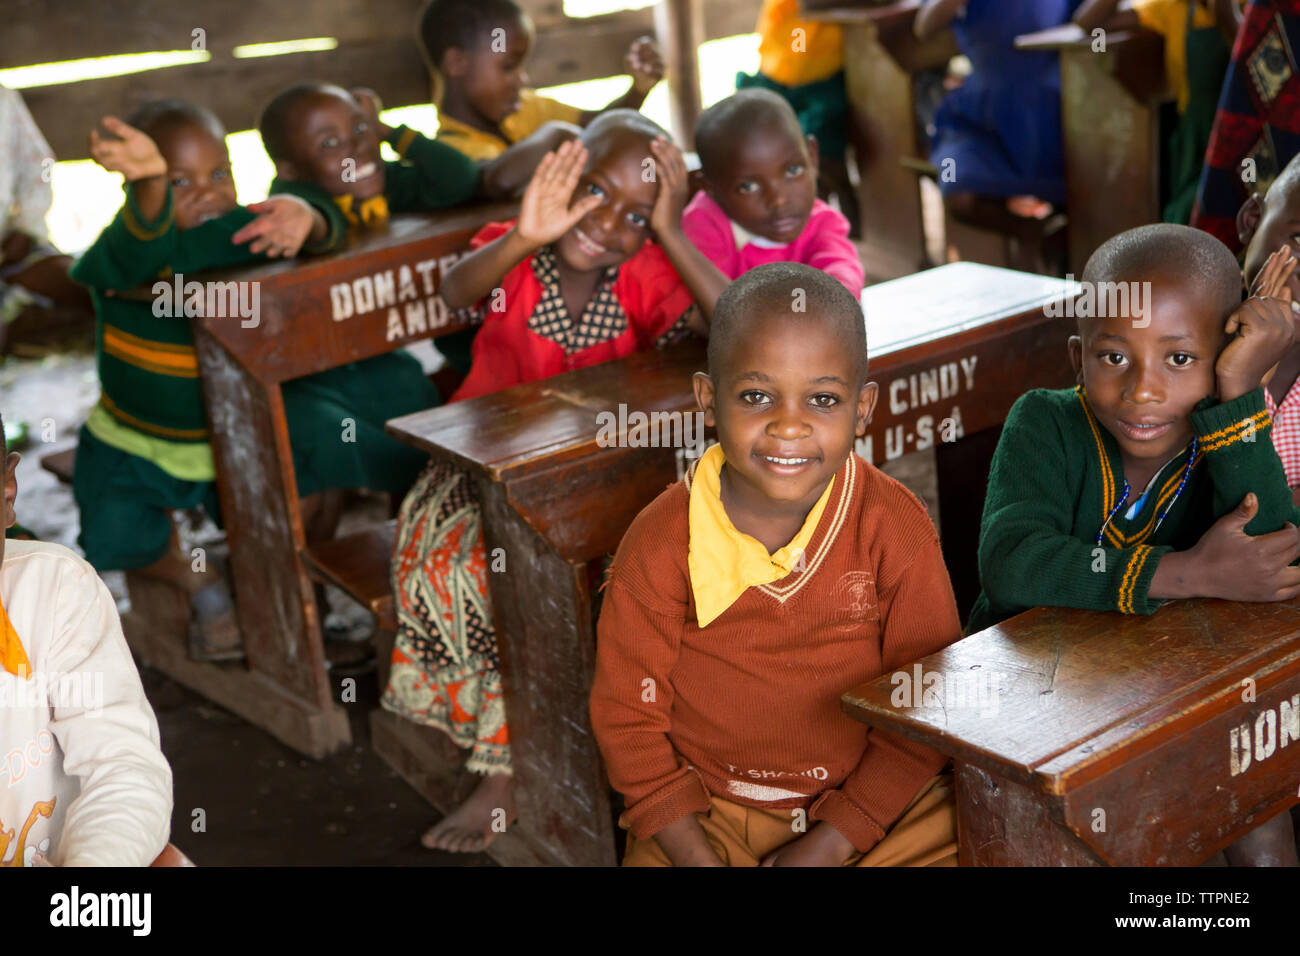 Children sitting at desks in school Stock Photo